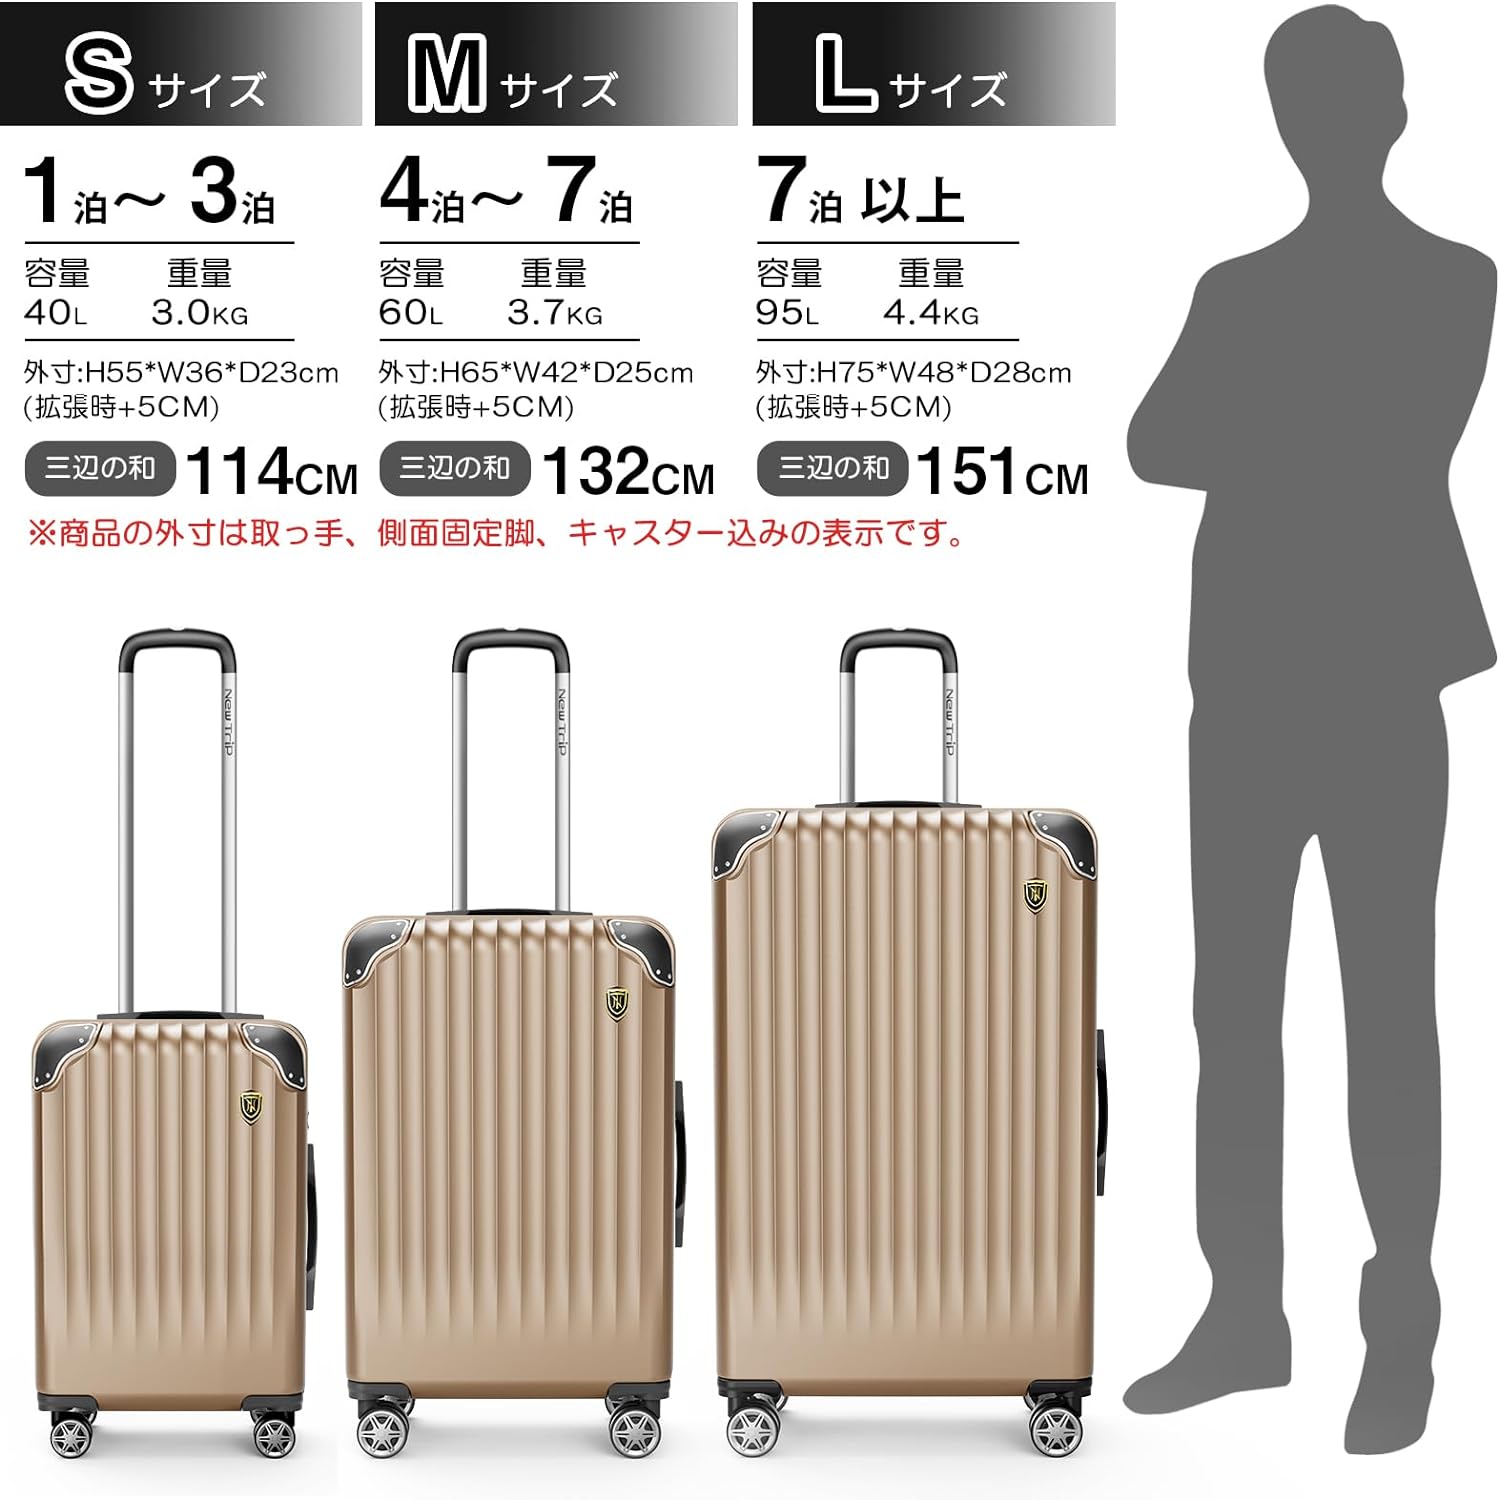 New Trip スーツケース 拡張機能付き S-Lサイズ